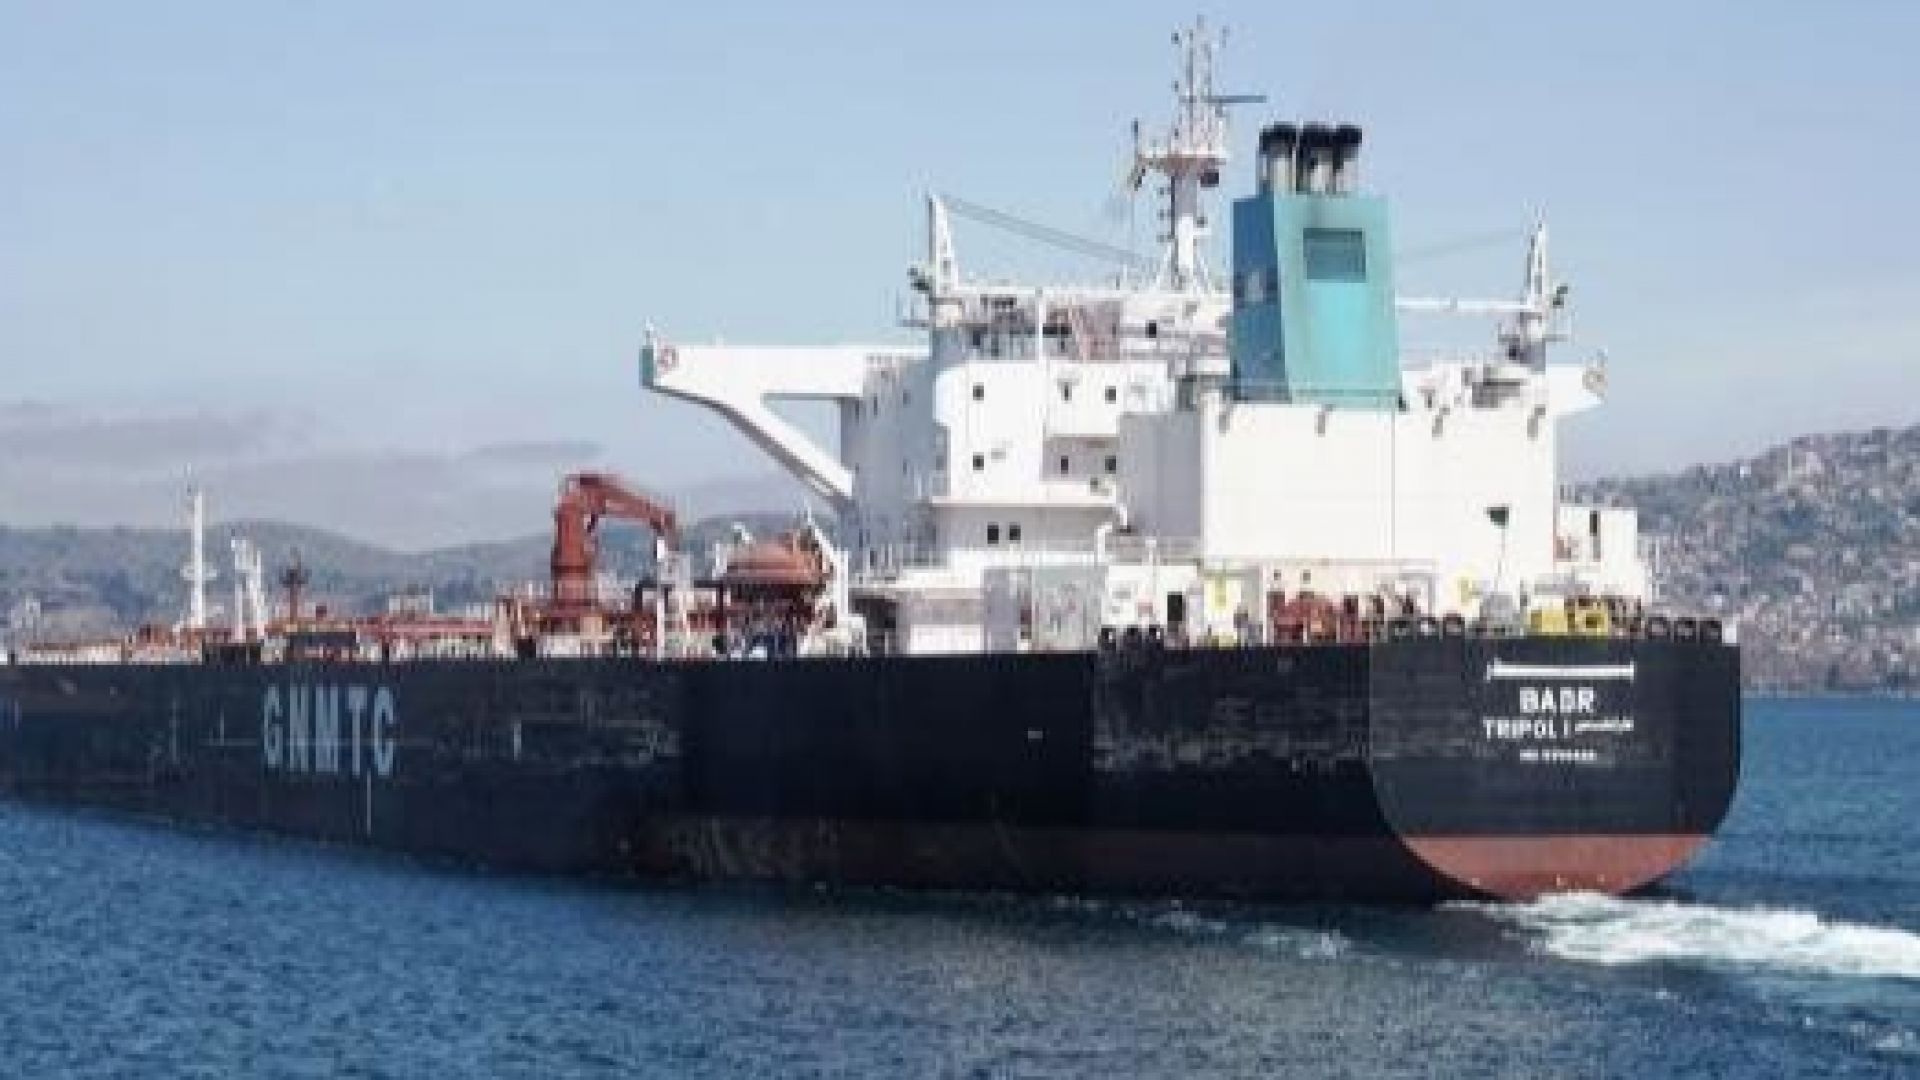 Изпълнителният лист за смяната на собствеността на либийския танкер БАДР